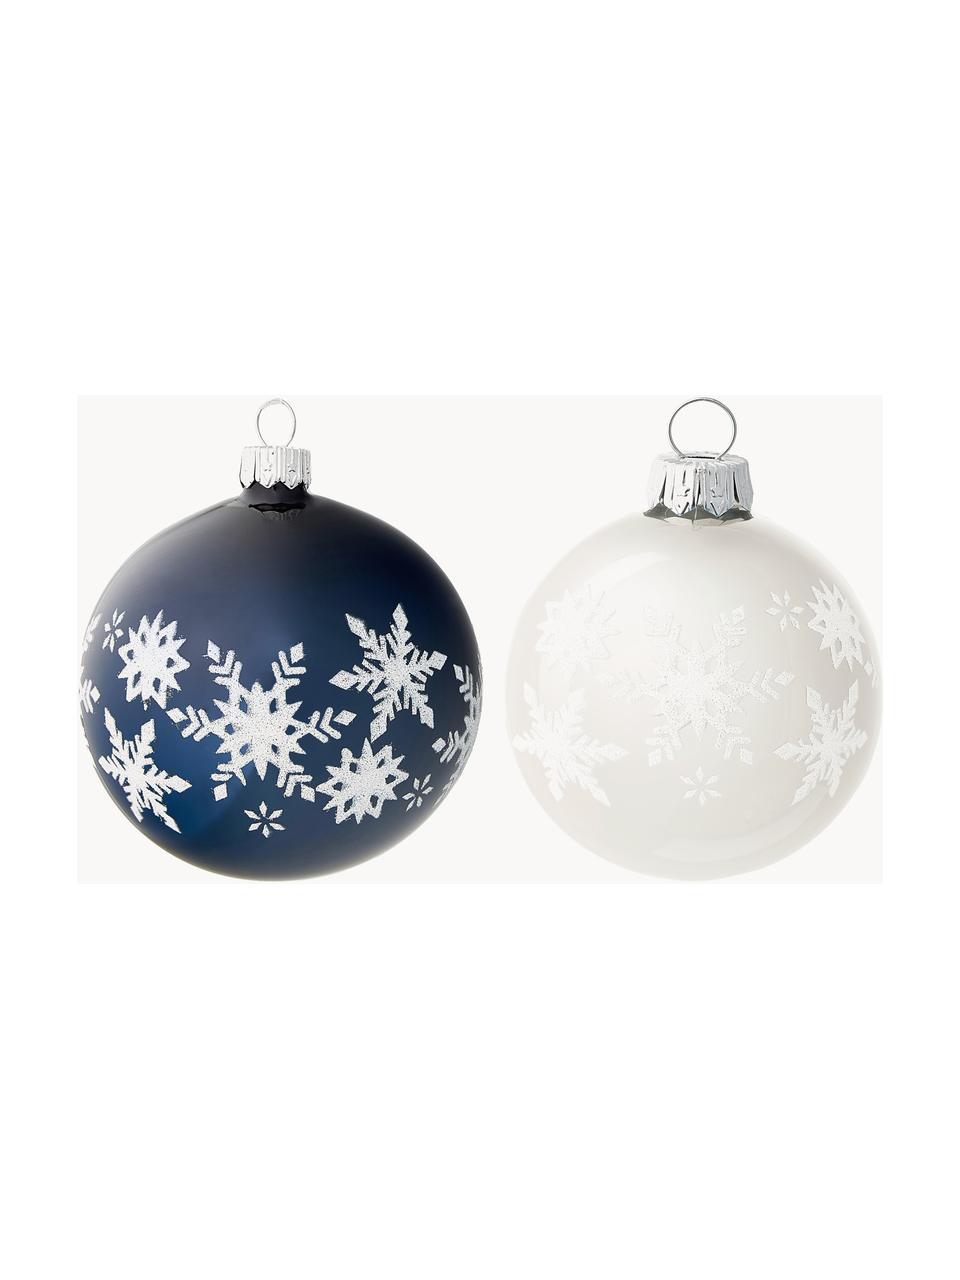 Mondgeblazen kerstballenset Snowflake Ø 8 cm, 6-delig, Glas, Blauwtinten, wit, zilverkleurig, Ø 8 x H 8 cm